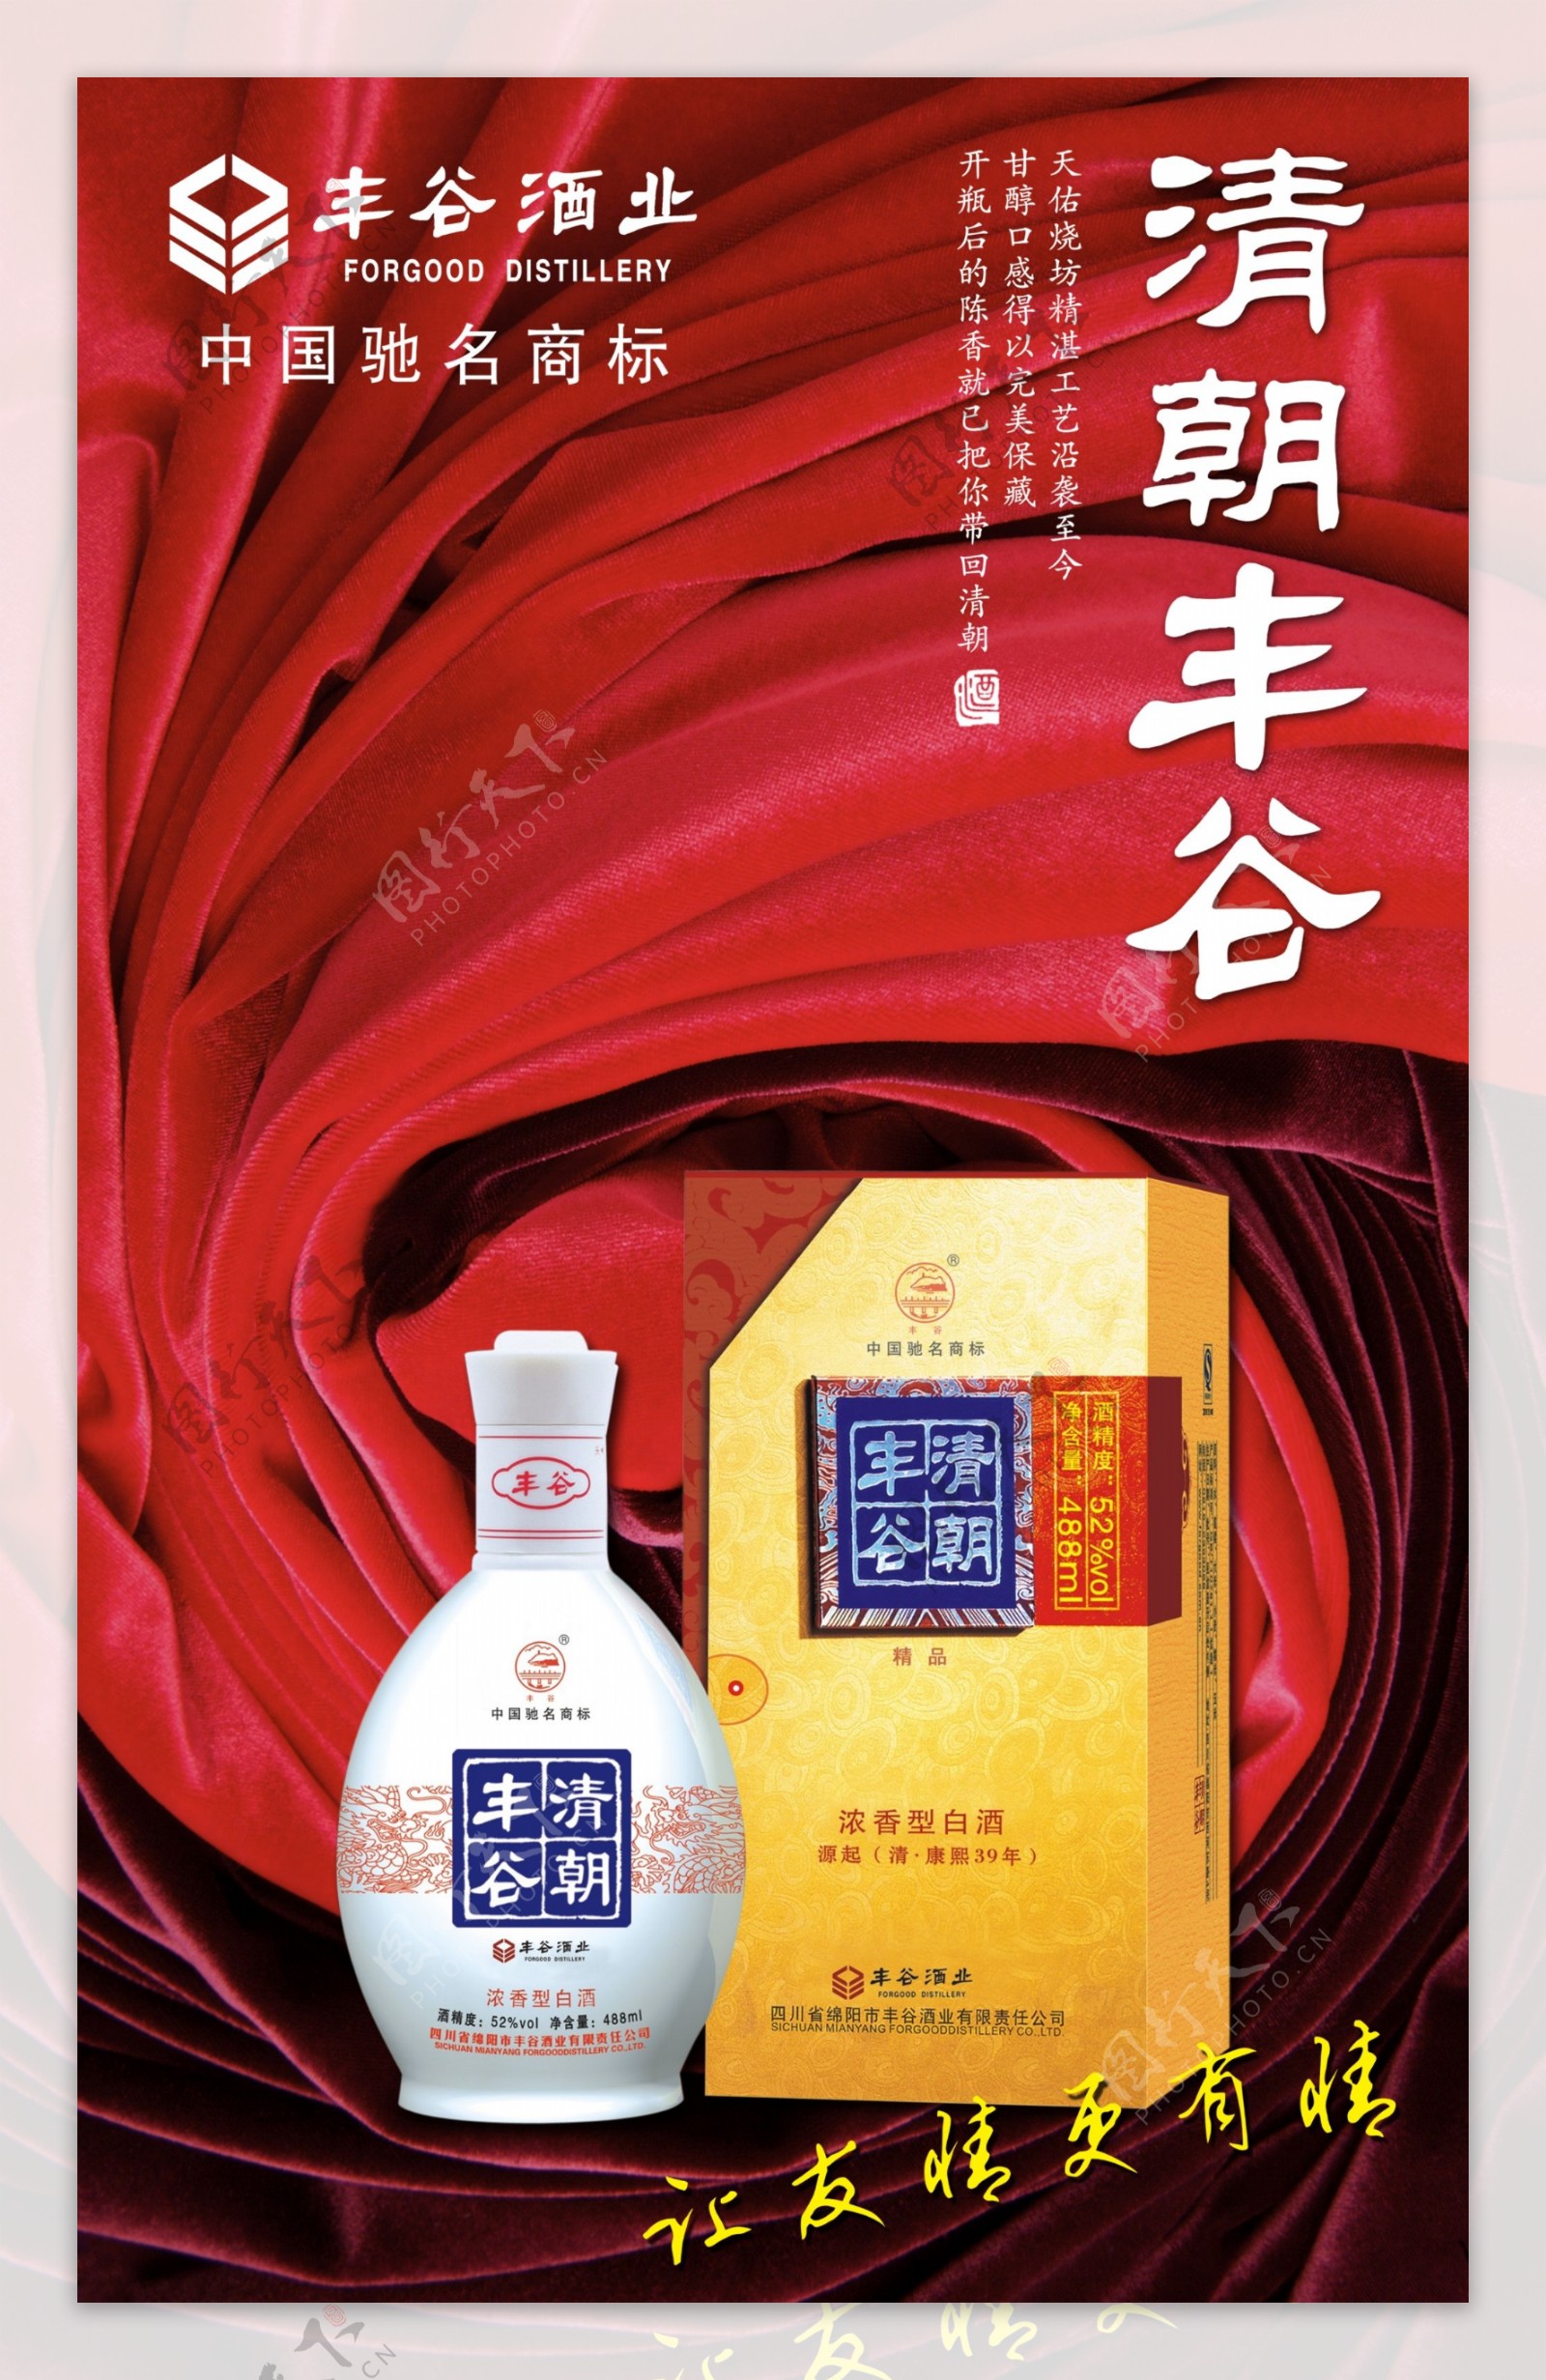 清朝丰谷酒业广告PSD素材